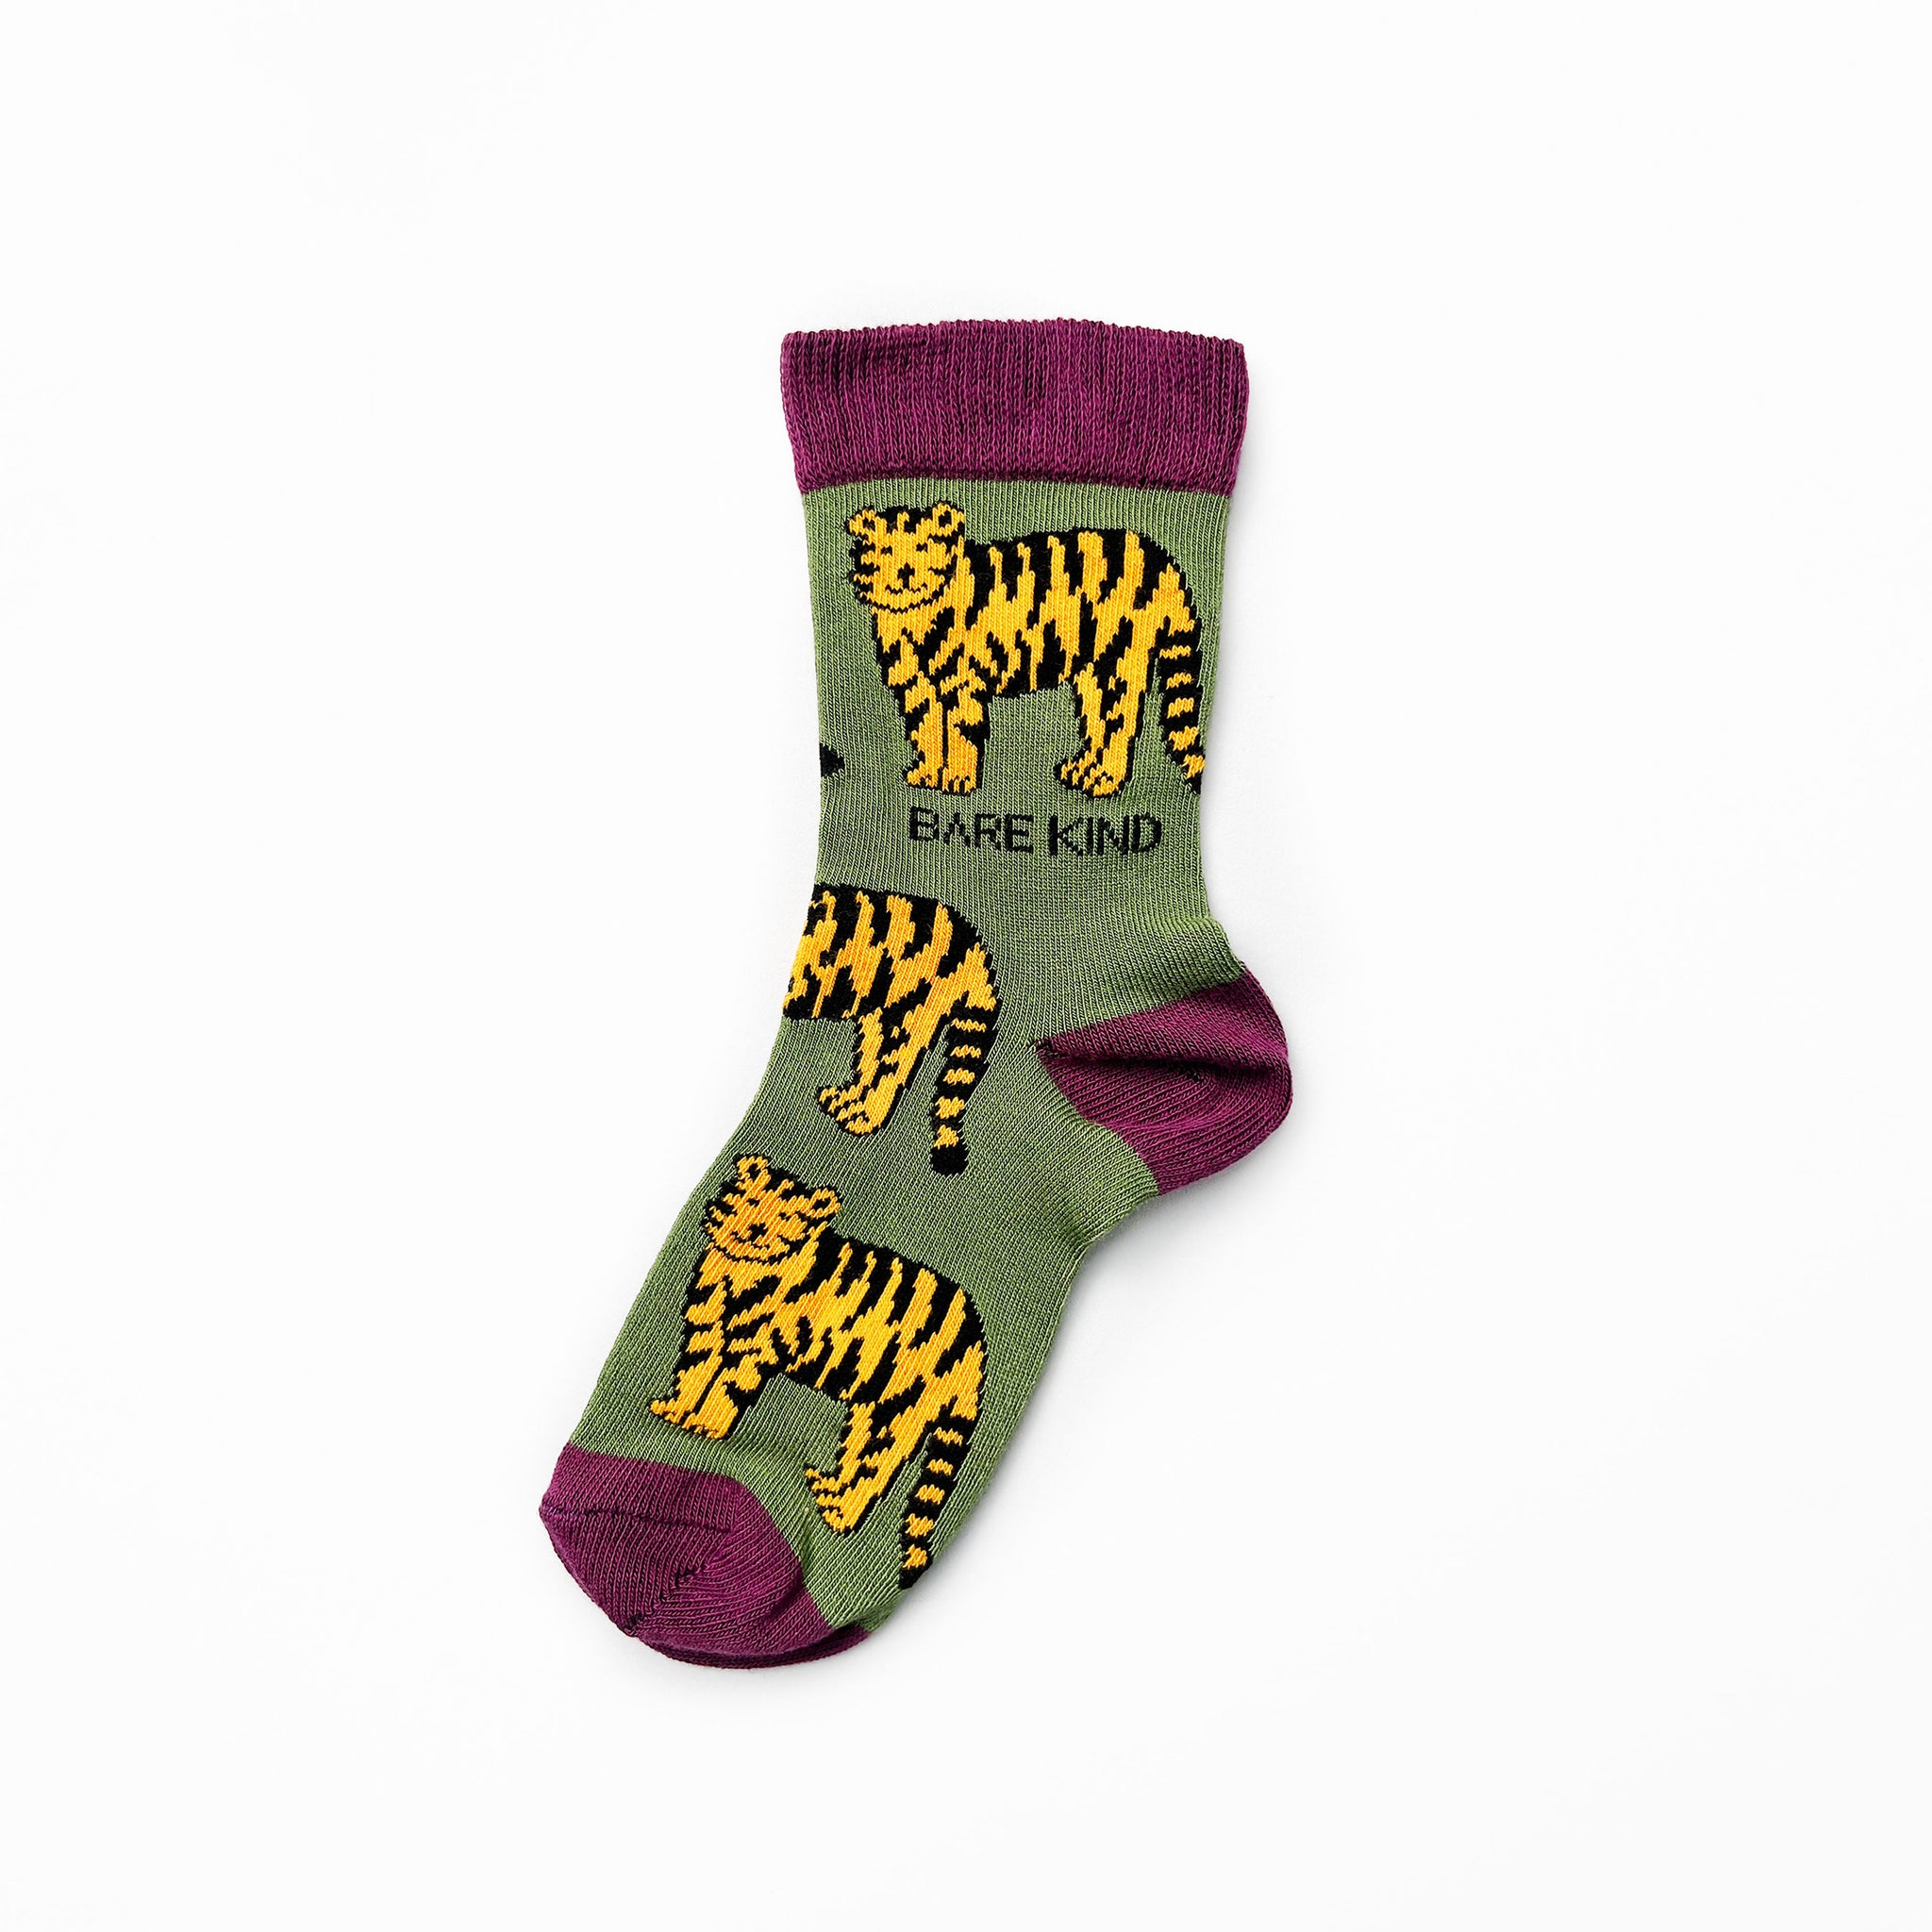 Kid's Lion & Tiger Socks, Mismatched by Design